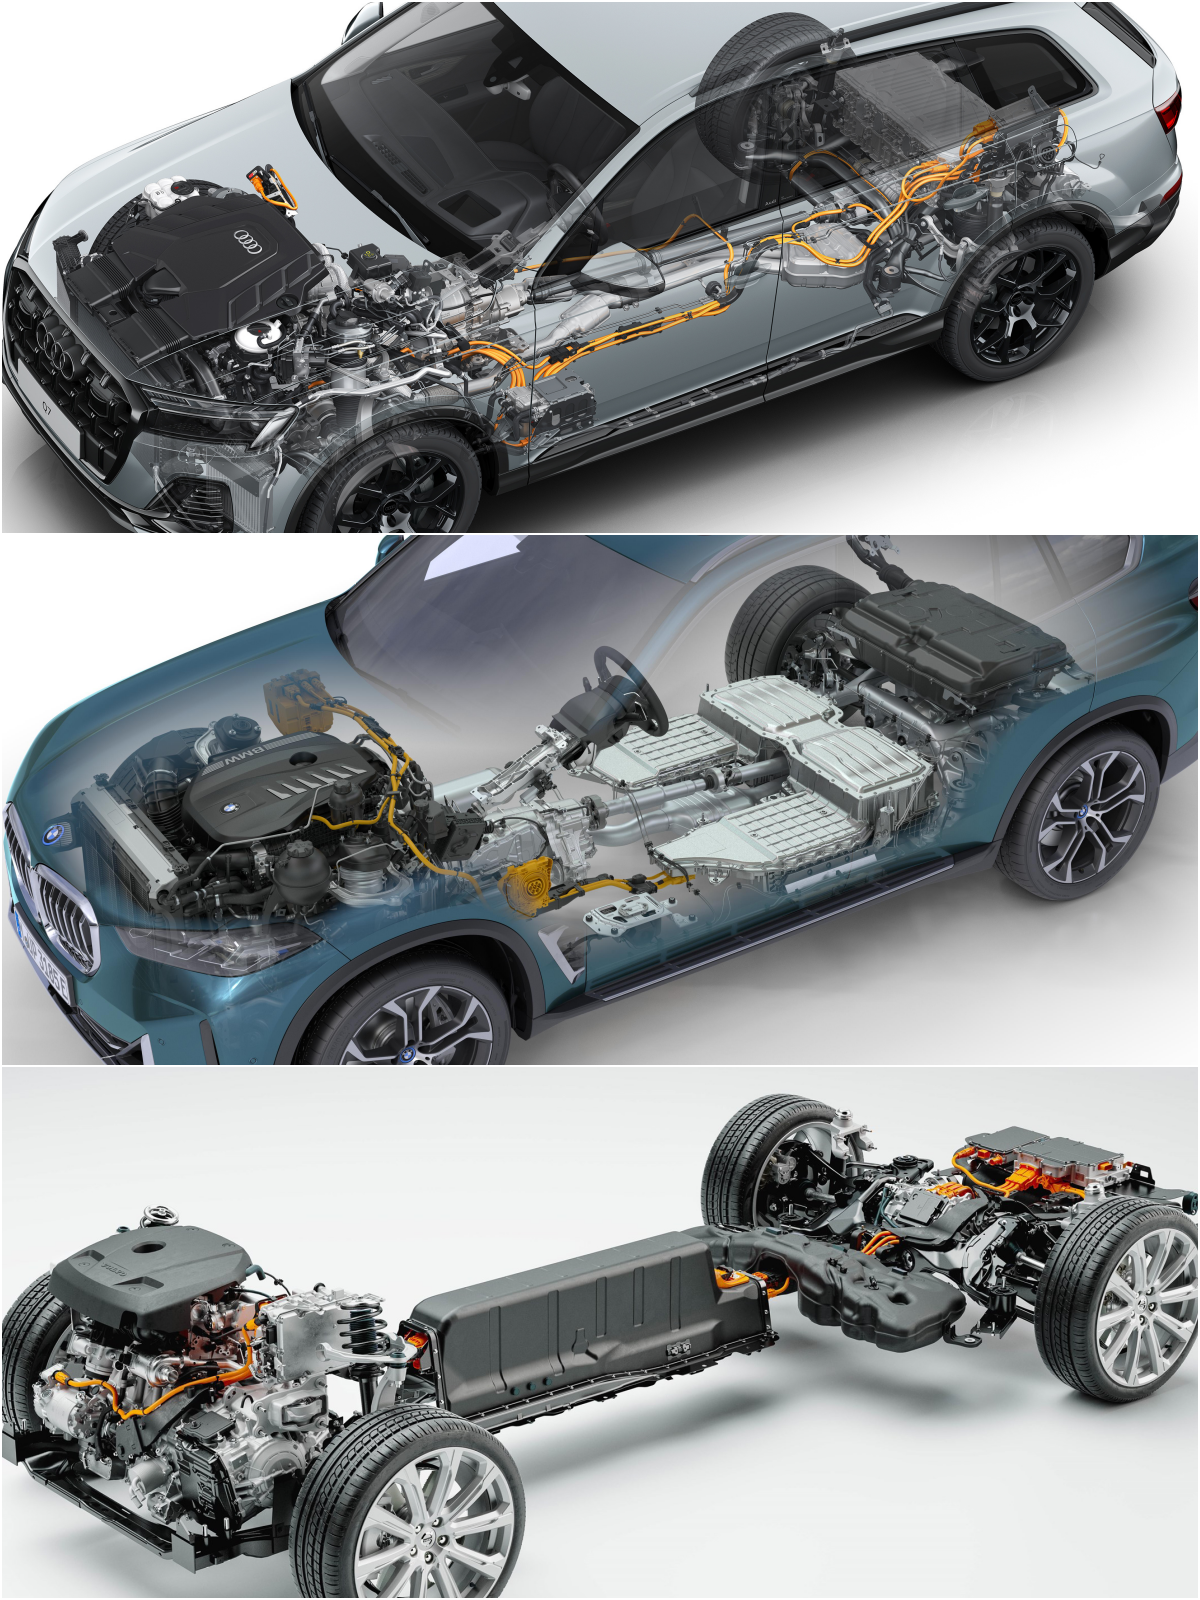 모터와 배선이 보이는 '차량 내부' 설계 이미지이다.